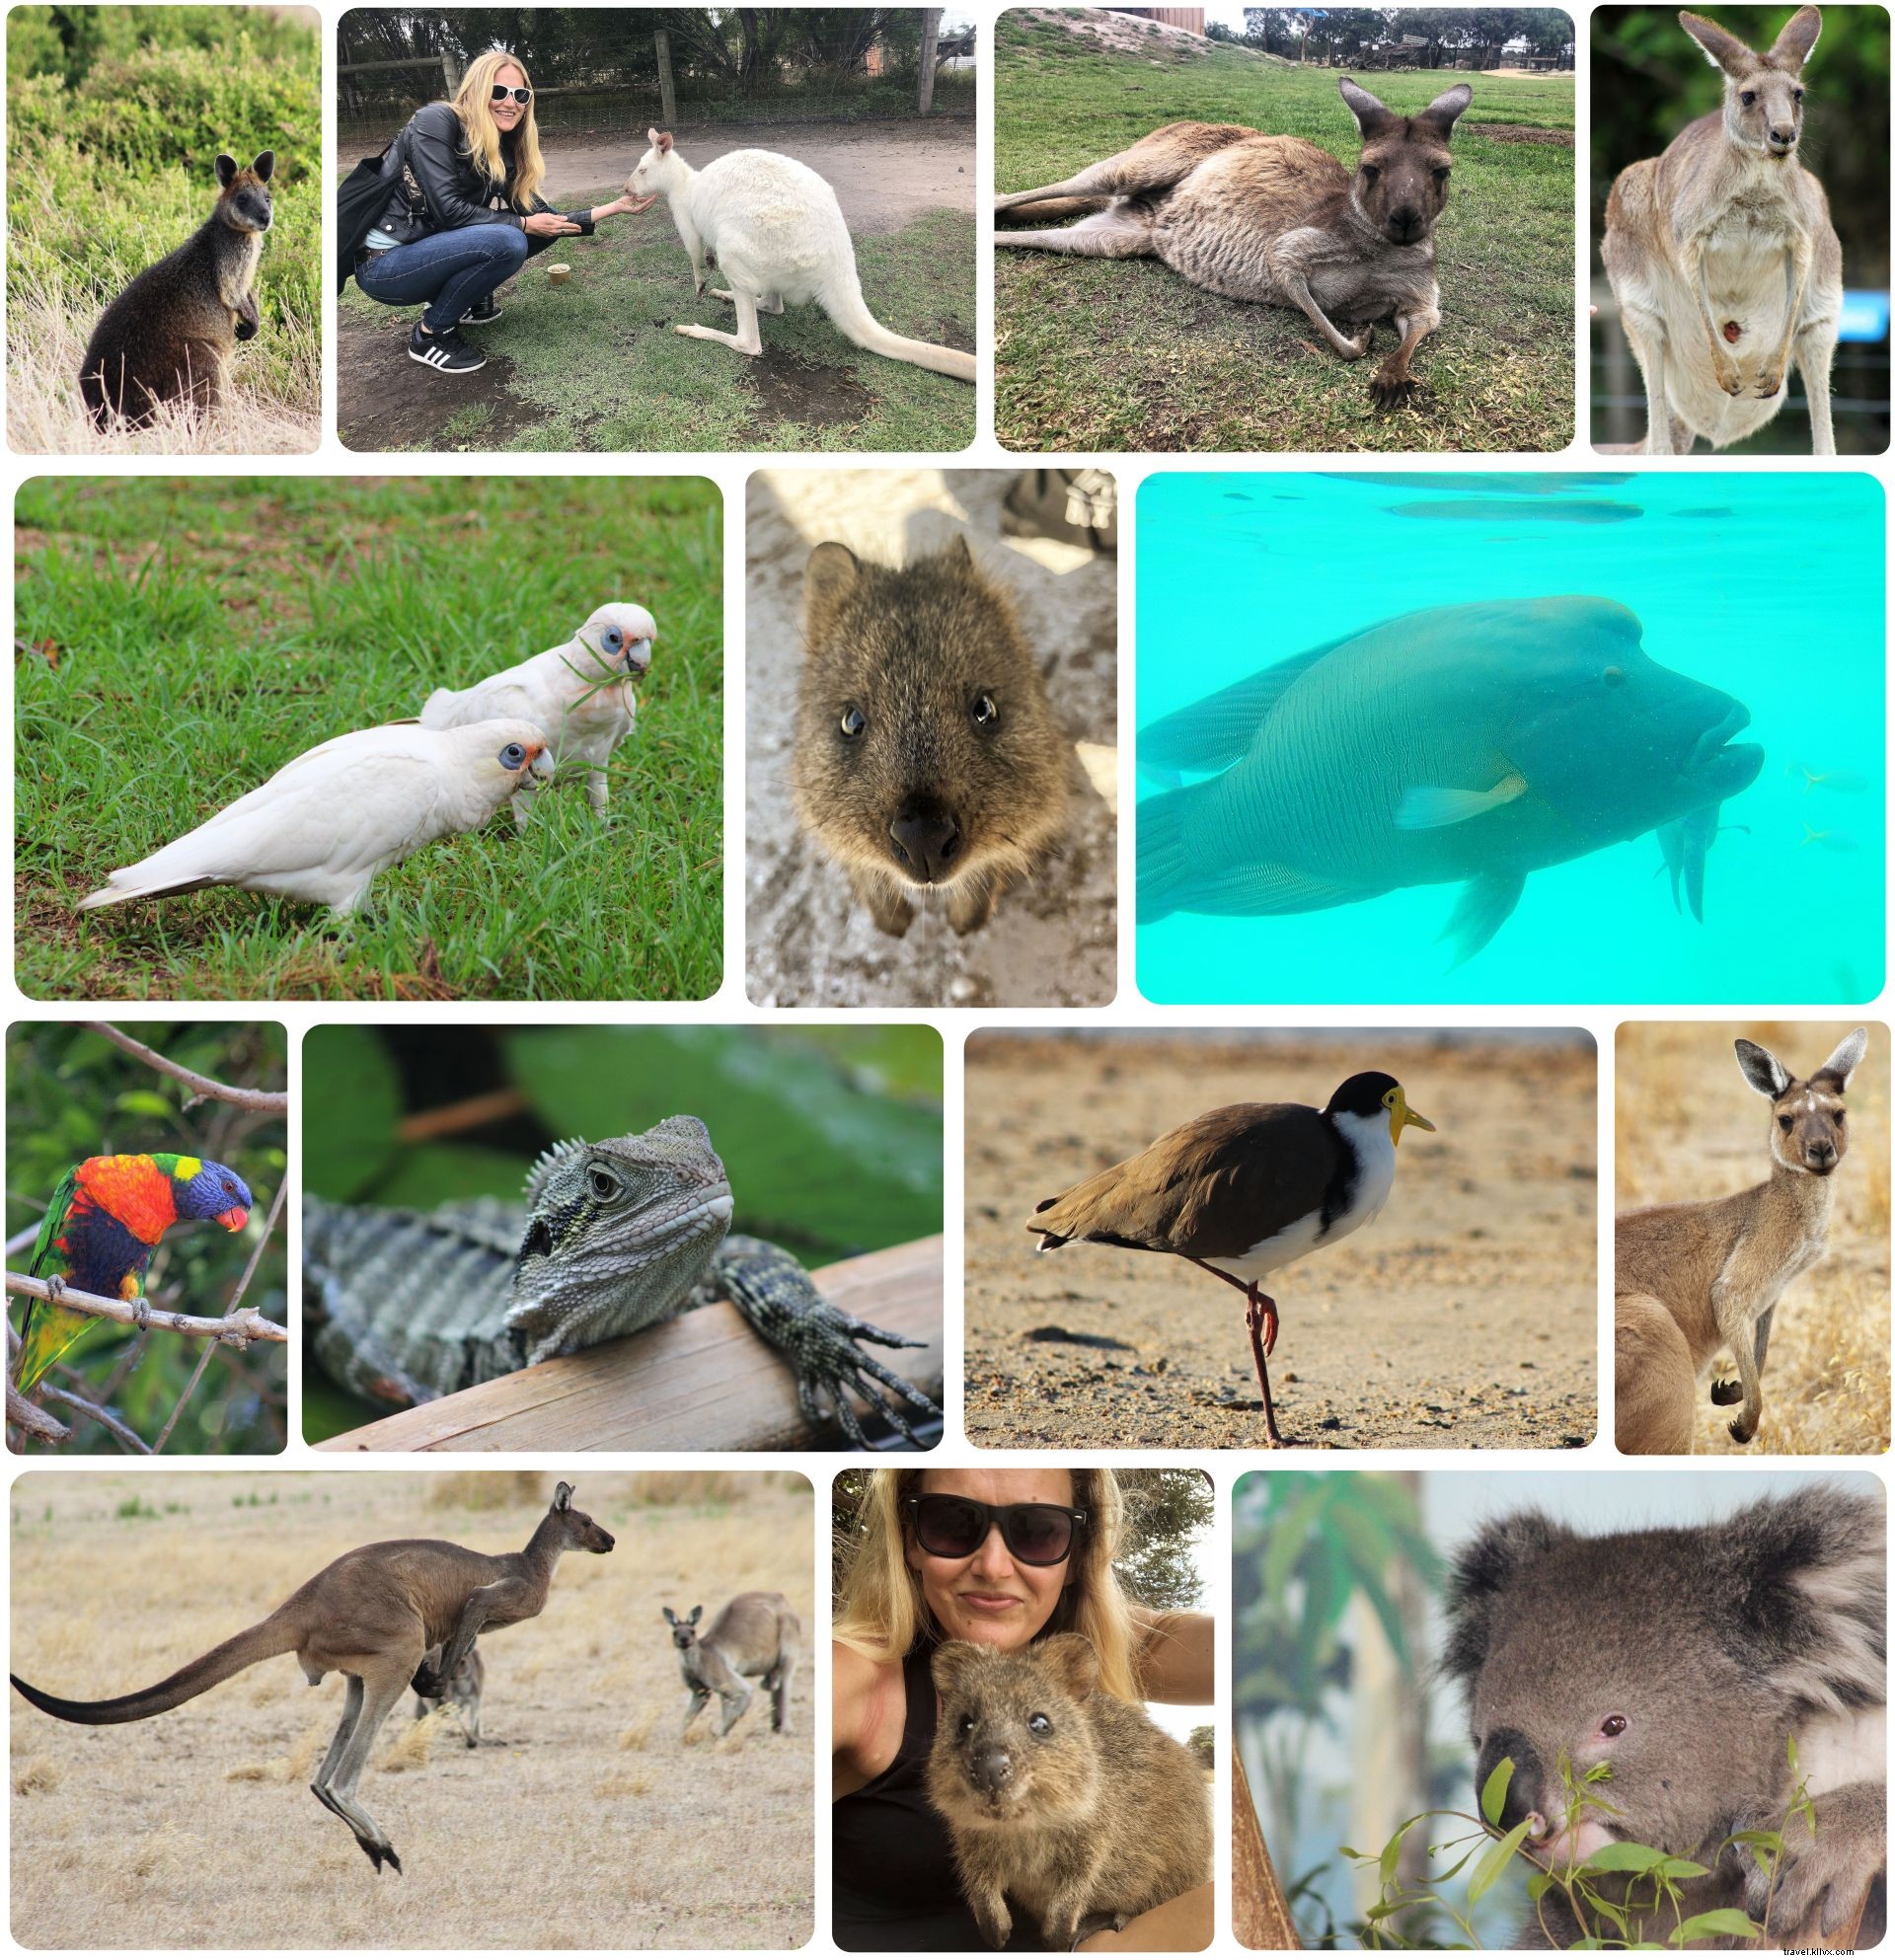 Mis seis puntos destacados de viajes a Australia